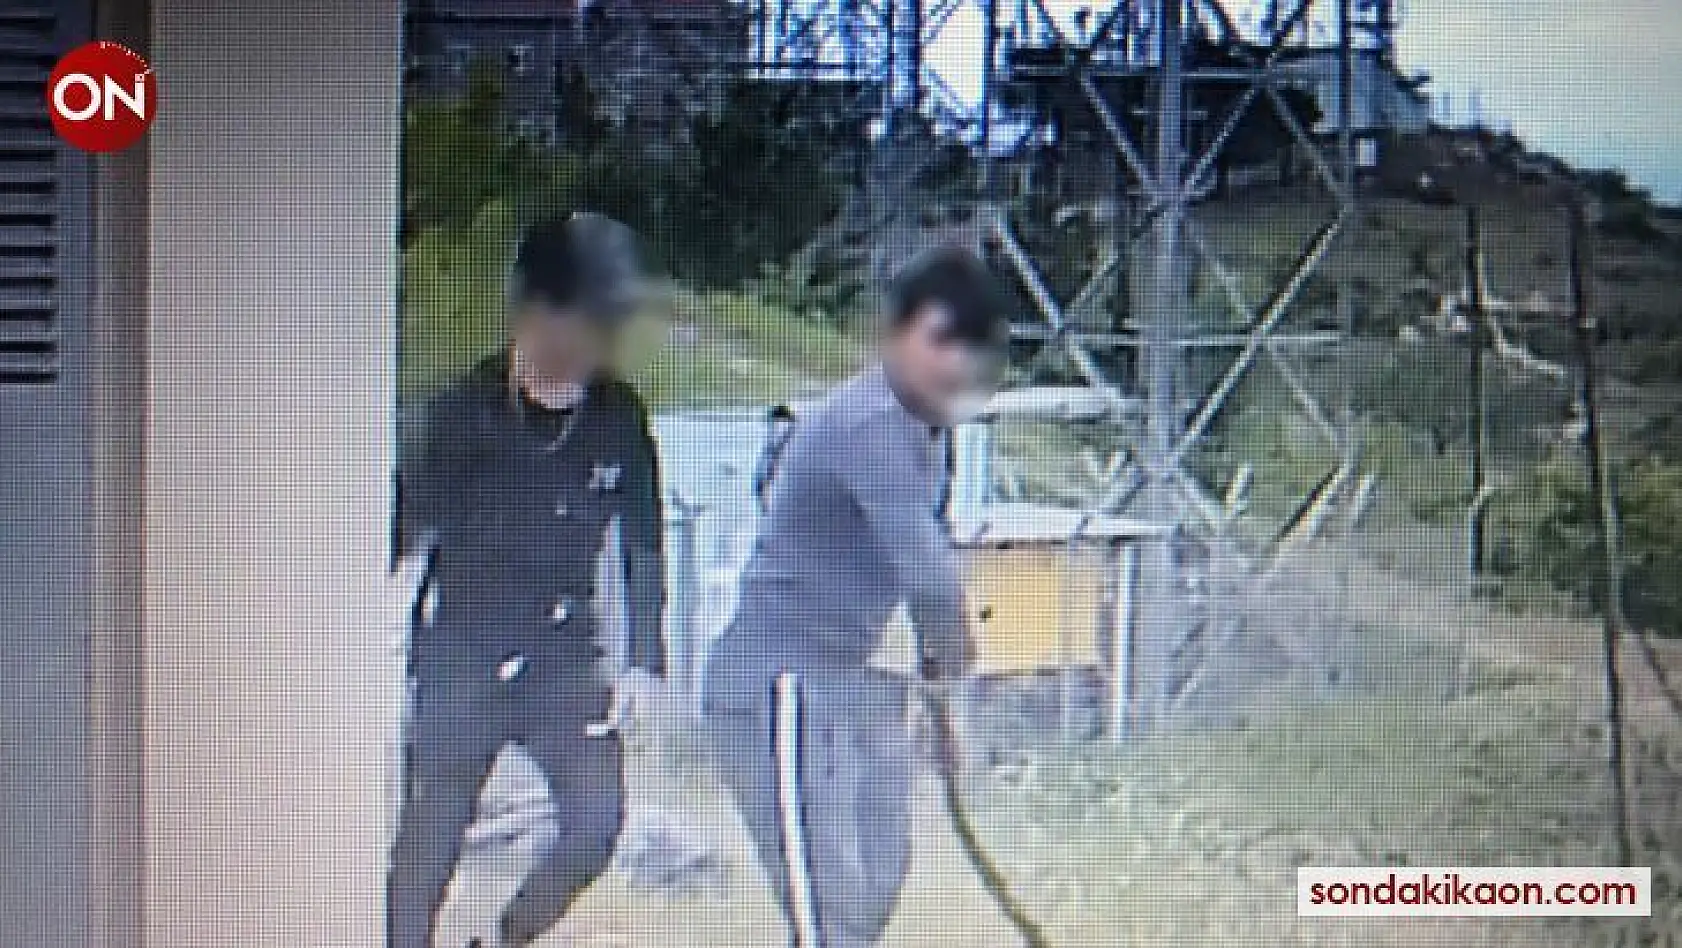 Bursa'da televizyon ve radyo vericilerine dadanan hırsızlar kameralara yakalandı